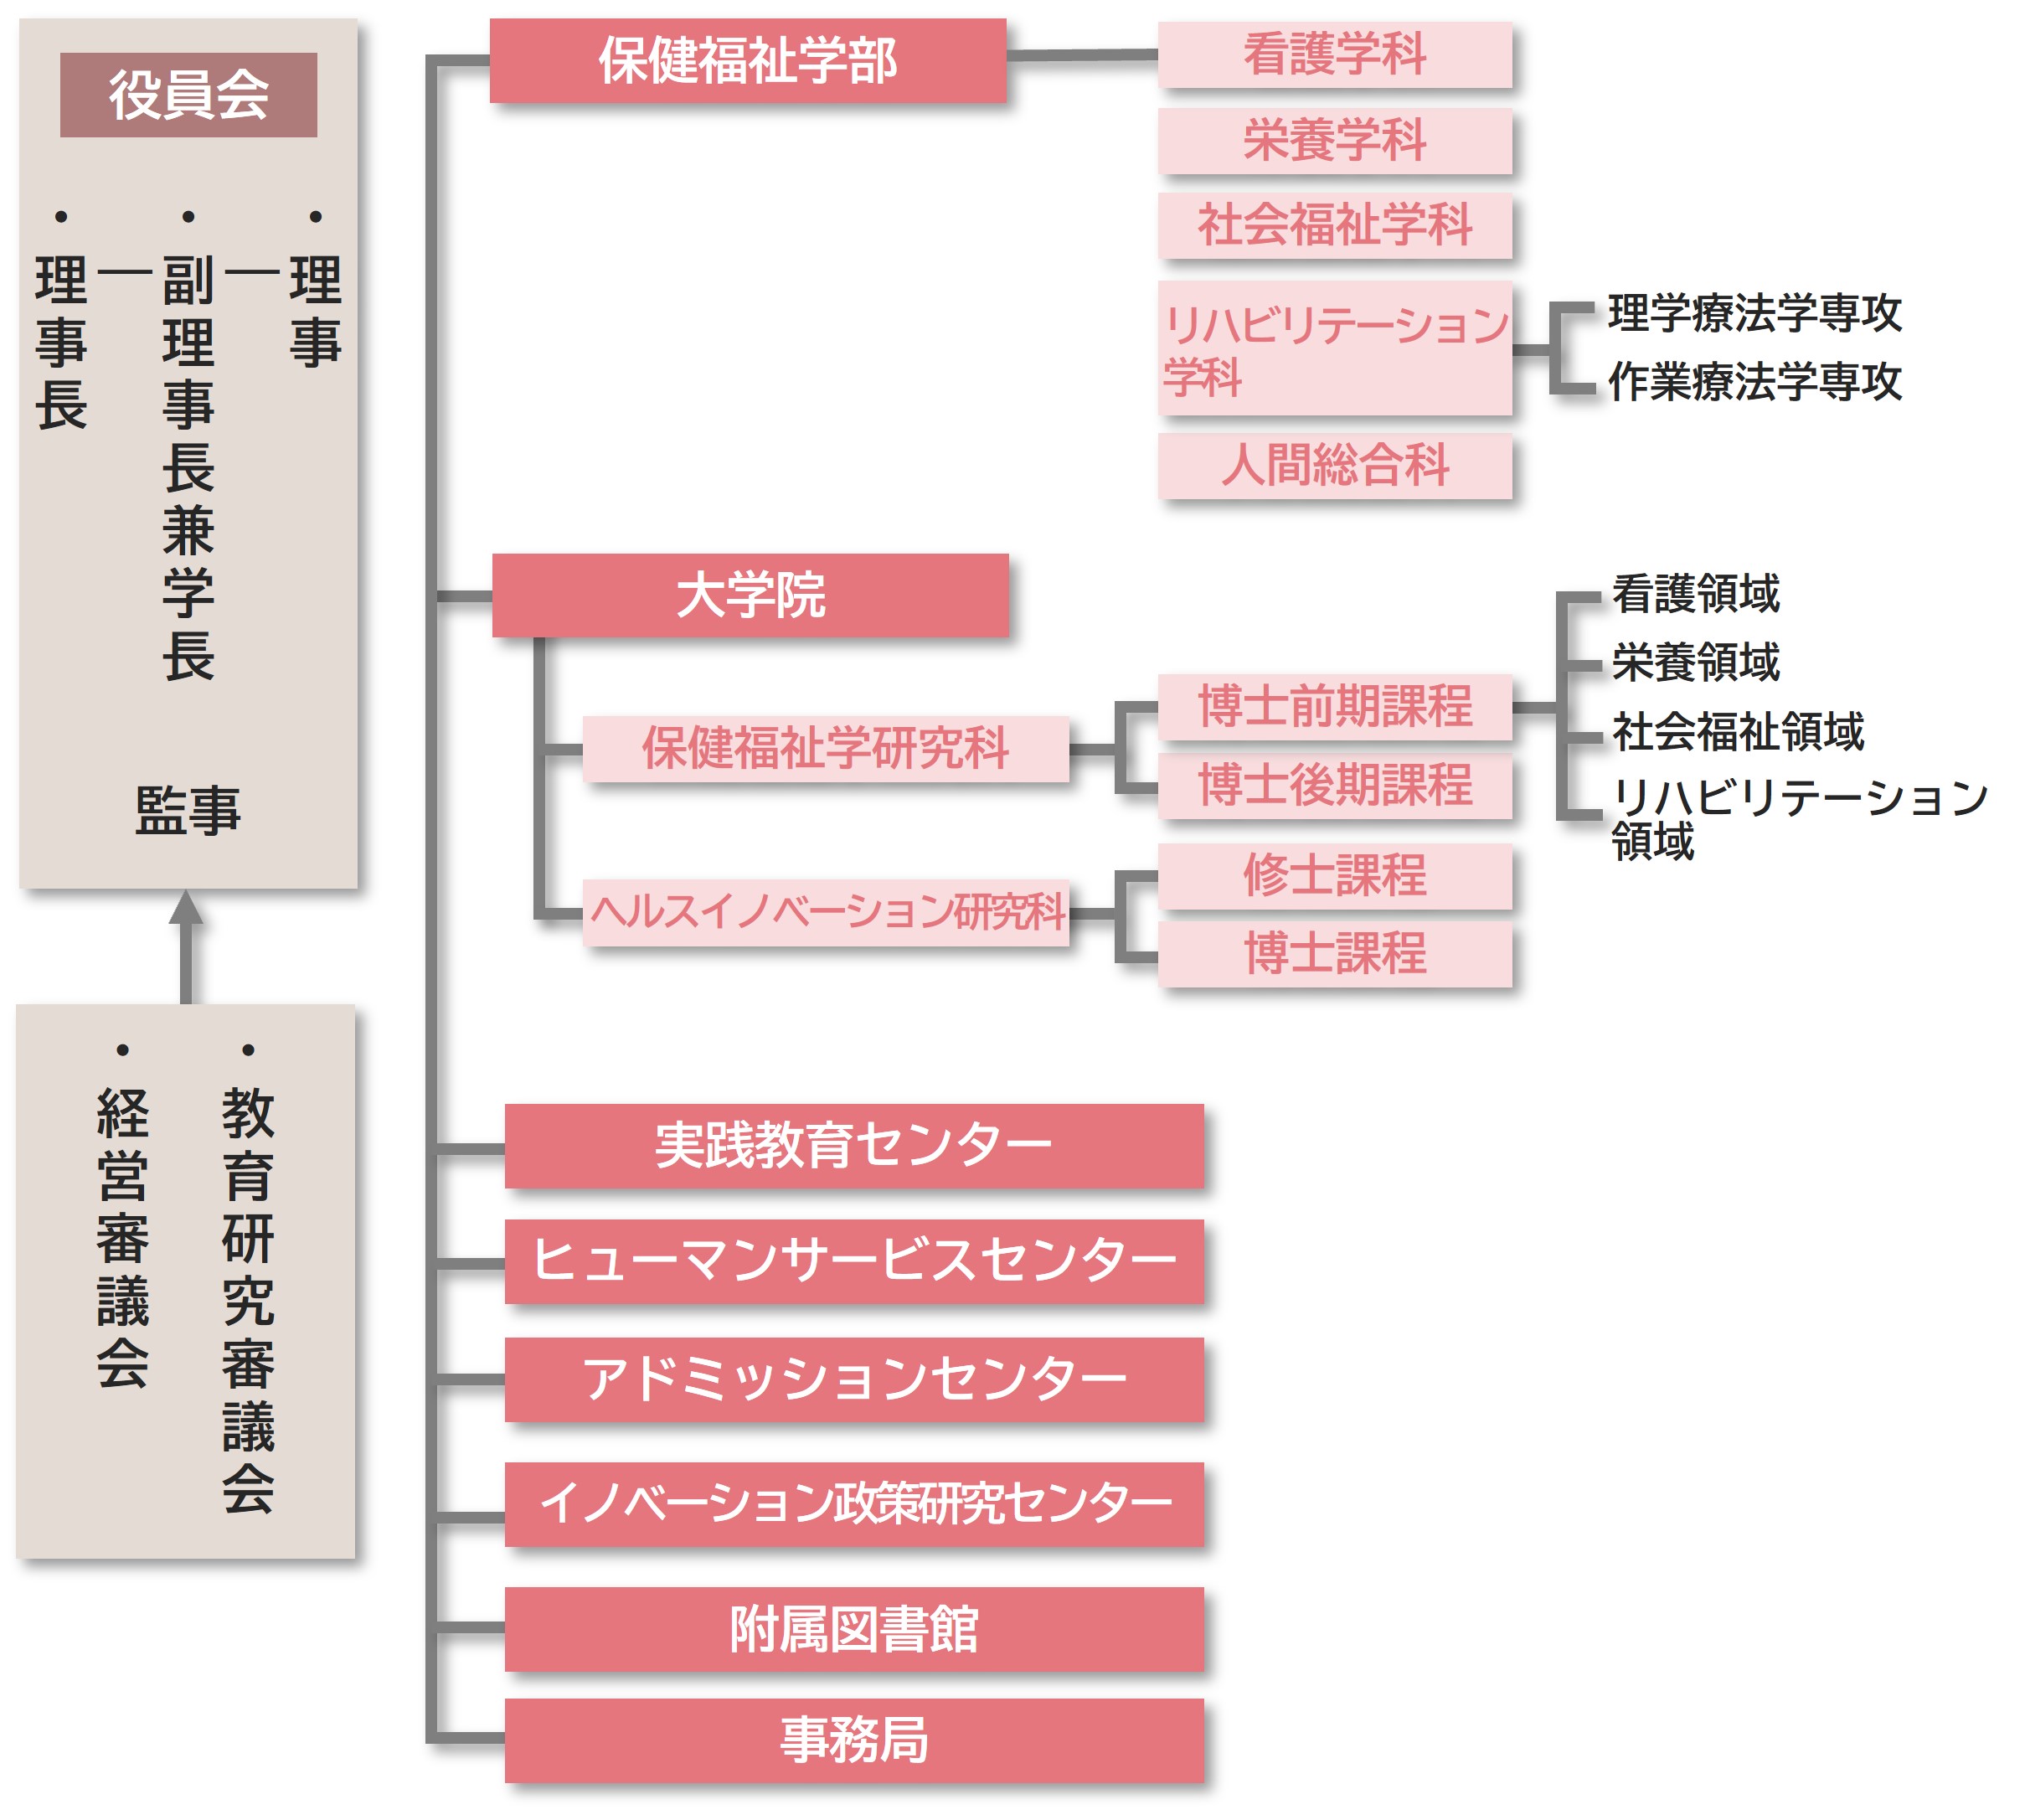 公立大学法人神奈川県立保健福祉大学組織図